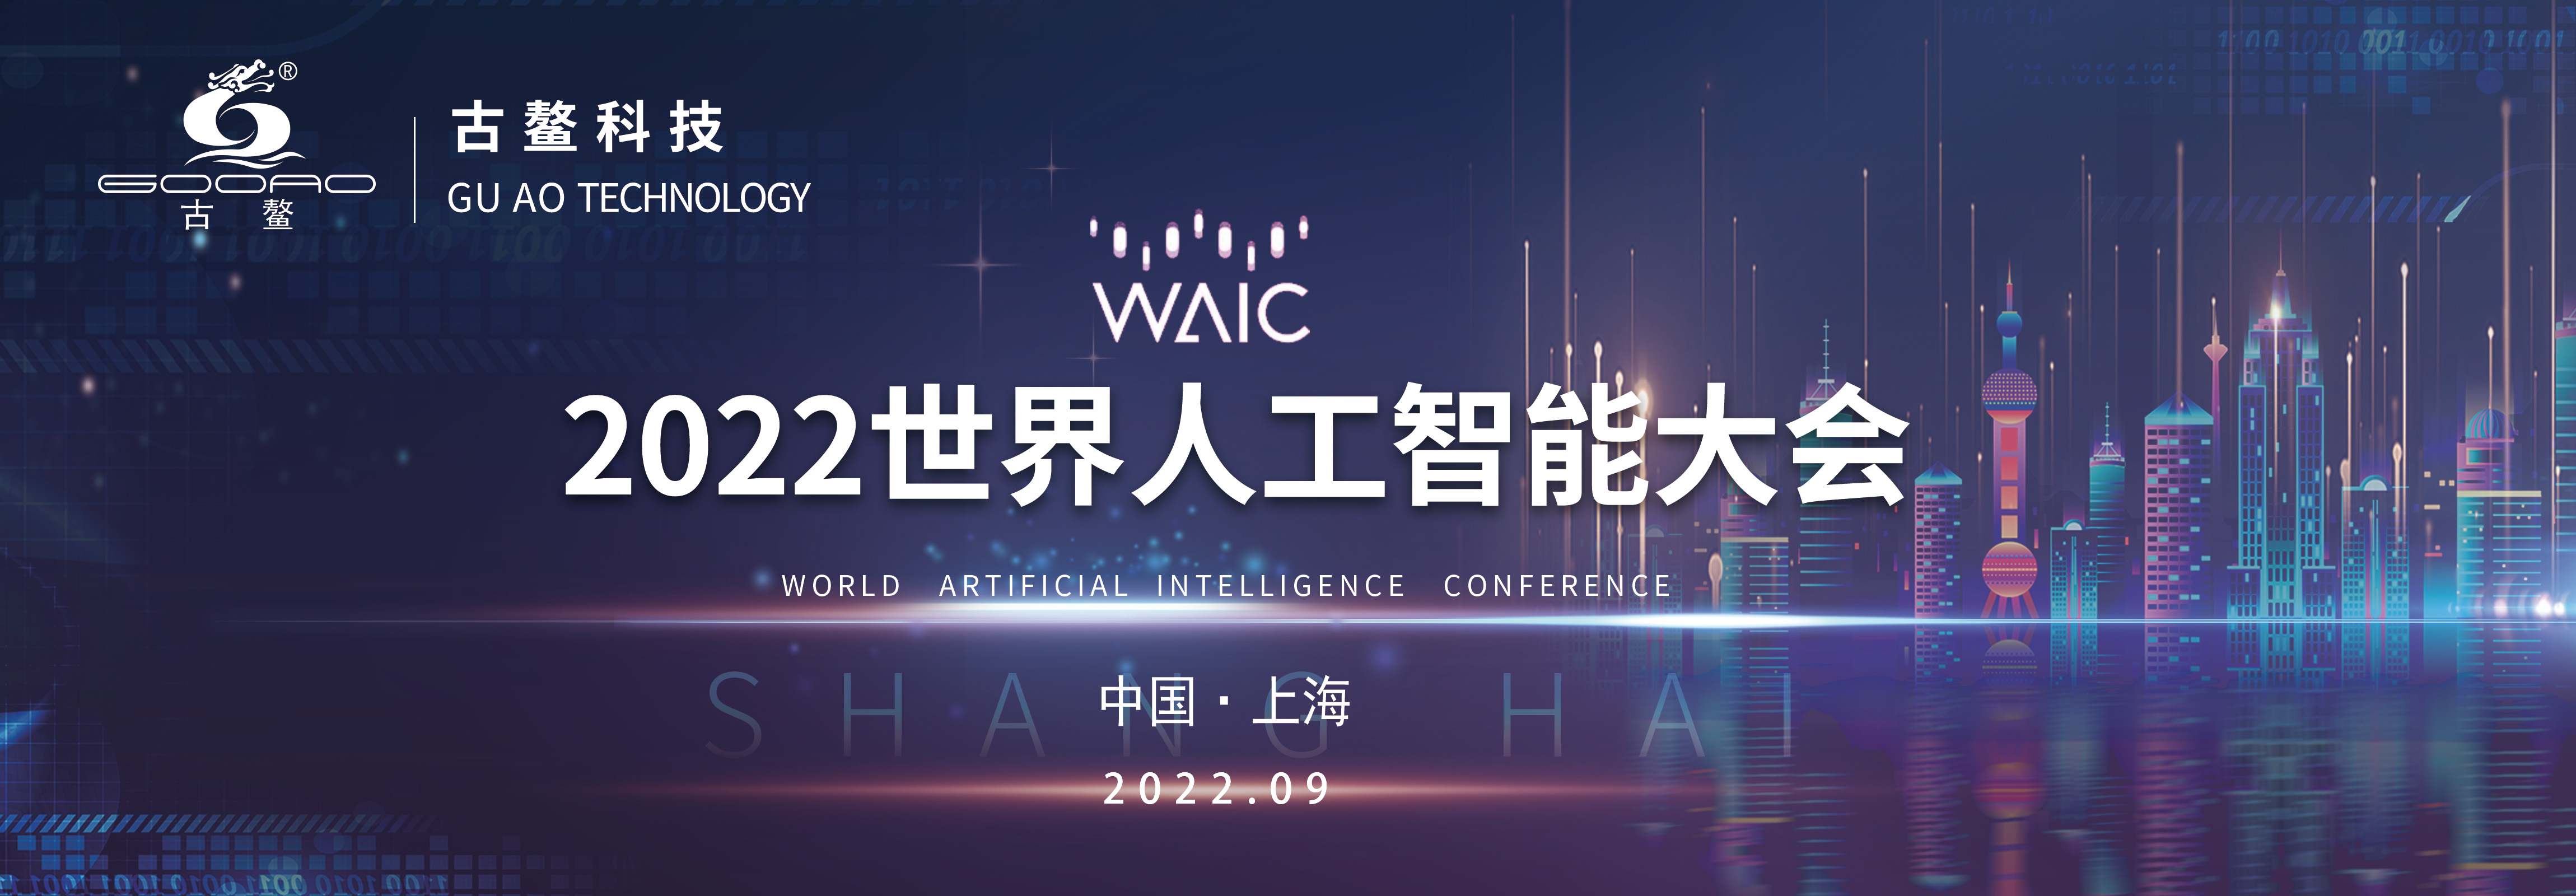 2022世界人工智能大会